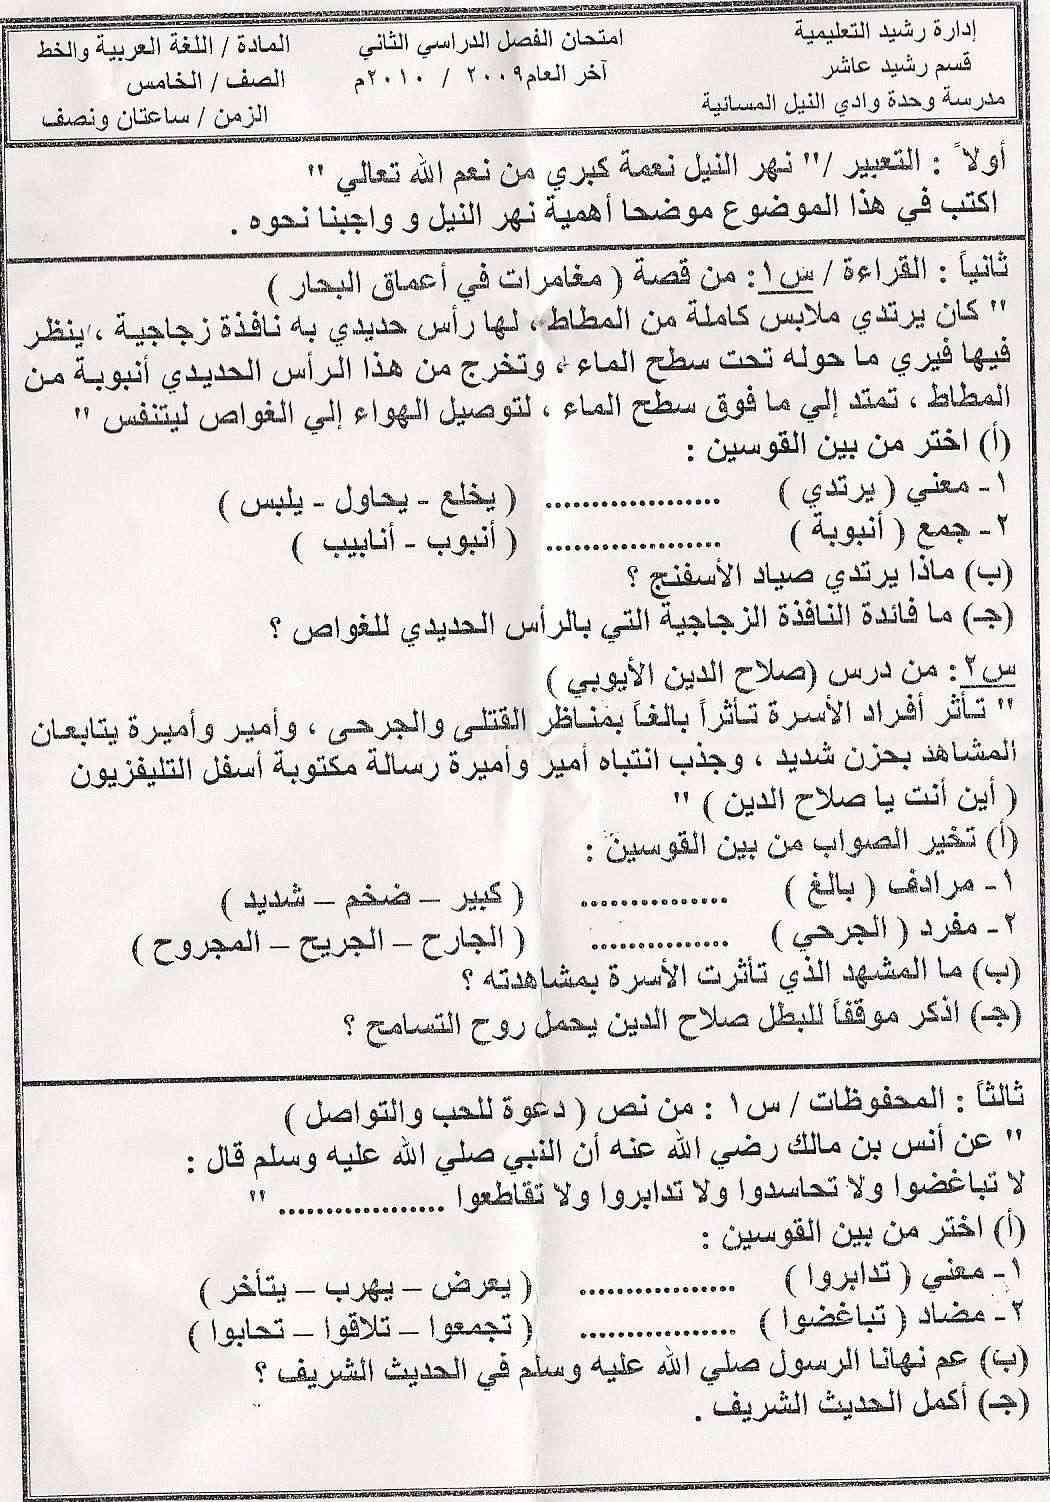 امتحان اللغة العربية الخامس الابتدائى مدرسة وحدة وادى النيل برشيد  Ououoo10